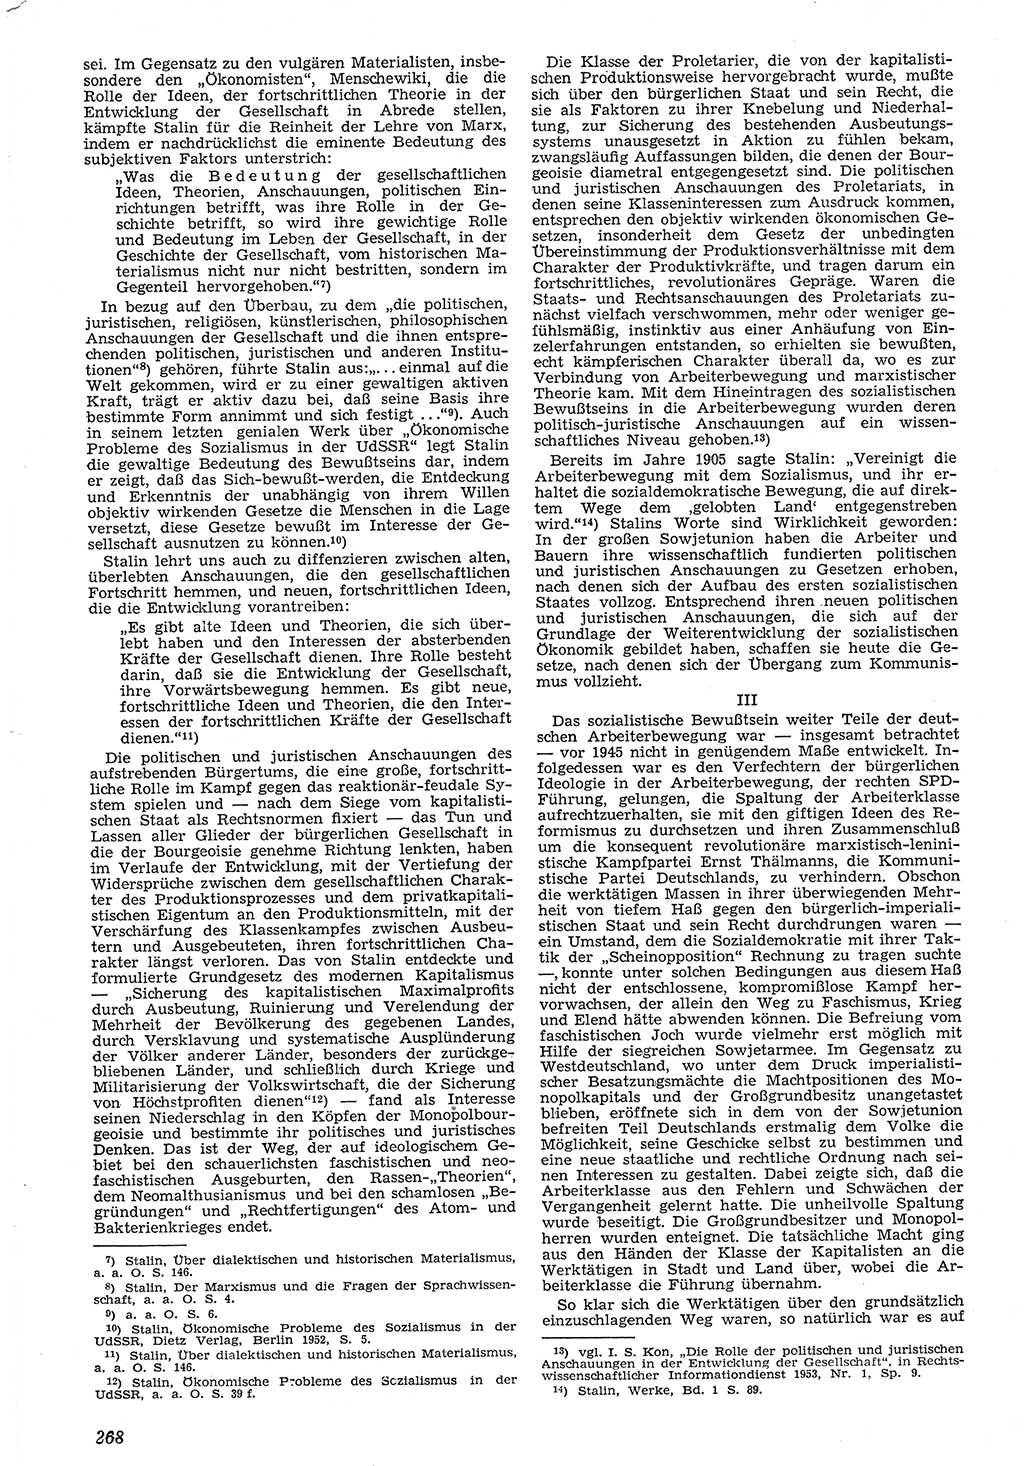 Neue Justiz (NJ), Zeitschrift für Recht und Rechtswissenschaft [Deutsche Demokratische Republik (DDR)], 7. Jahrgang 1953, Seite 268 (NJ DDR 1953, S. 268)